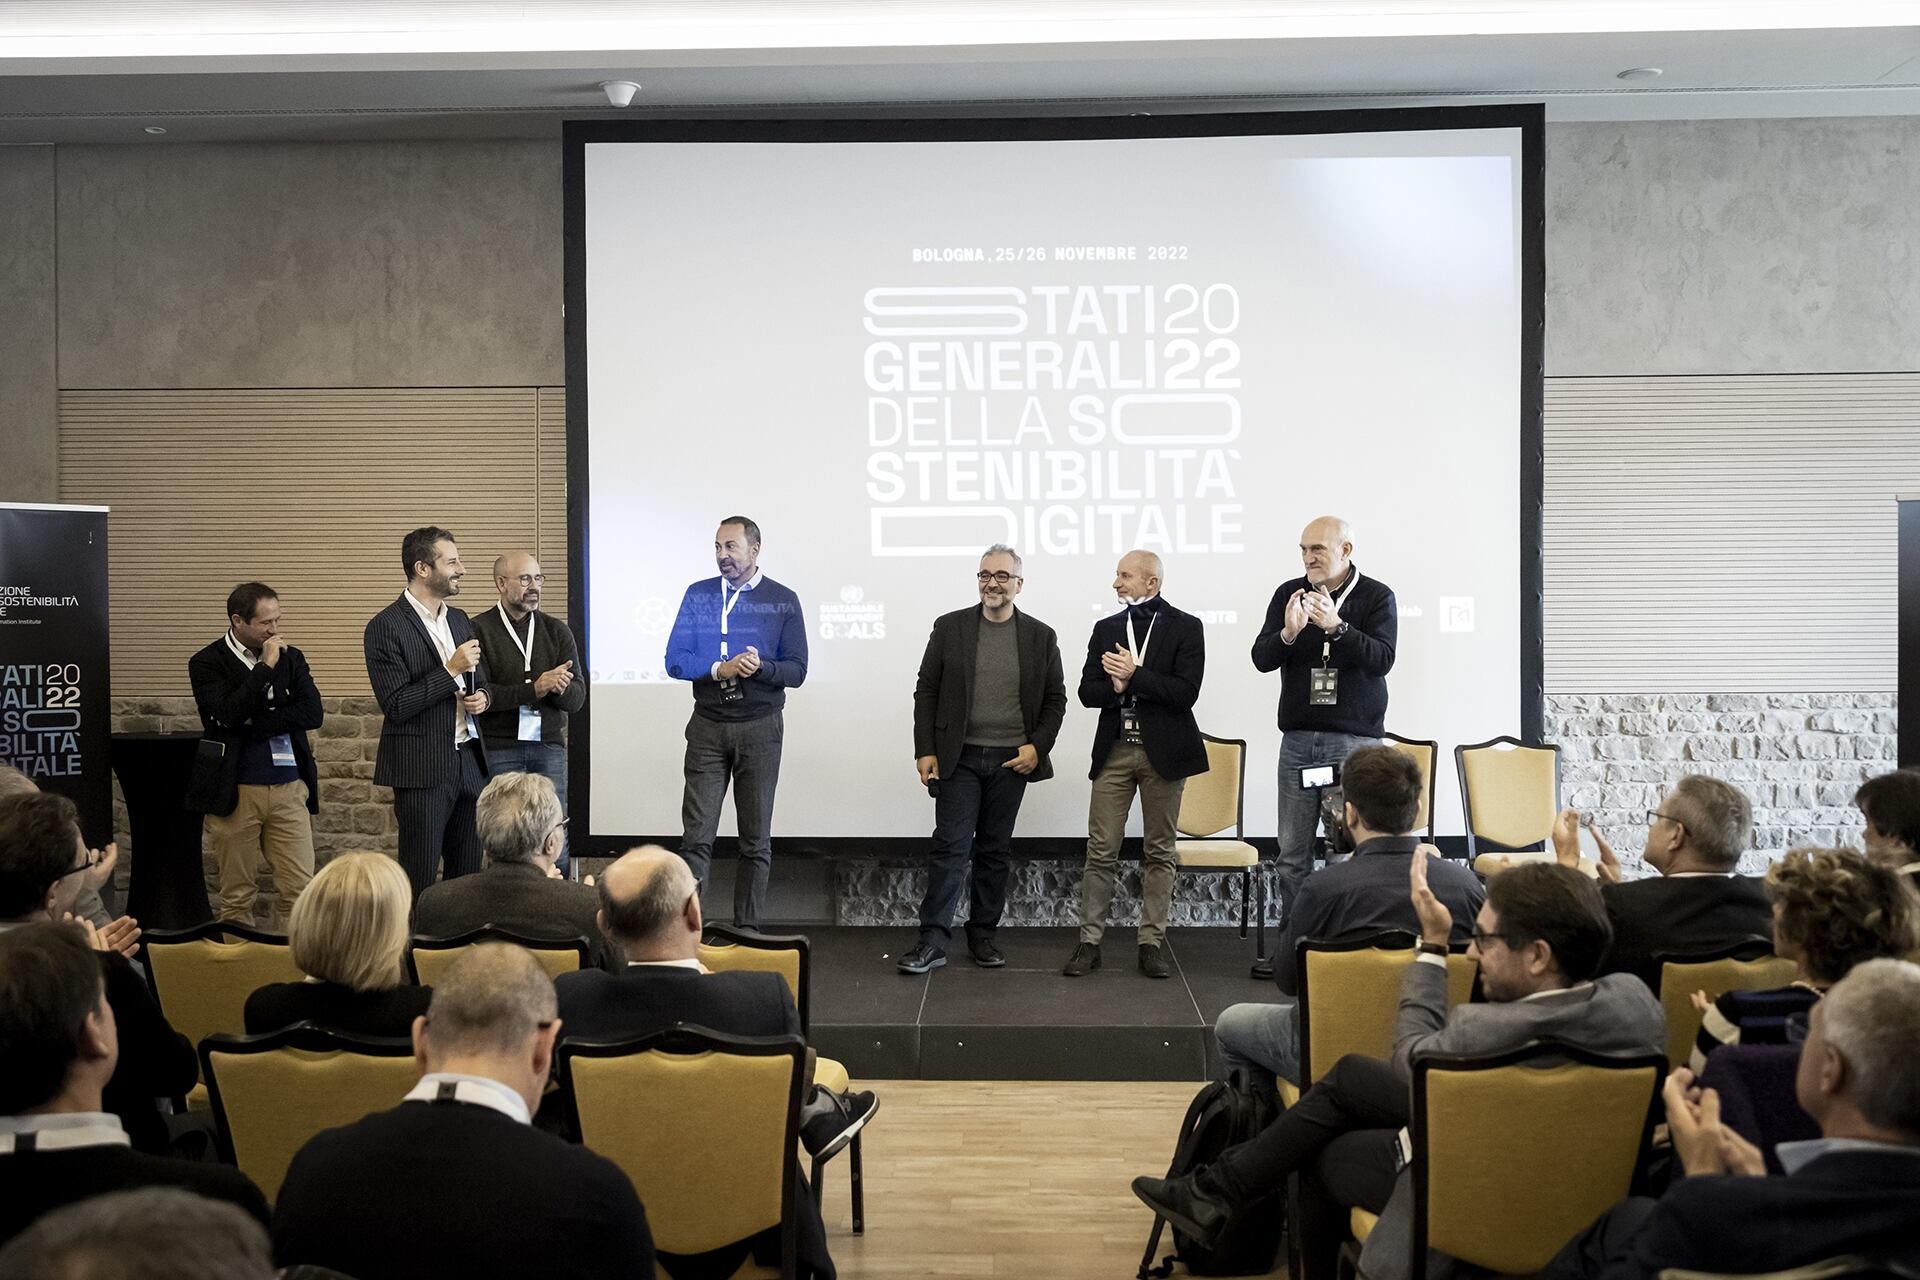 Stefano Epifani: el comité organizador del evento "Stati Generali della Sostenibilità Digitale", organizado en Bolonia (Italia) los días 25 y 26 de noviembre de 2022